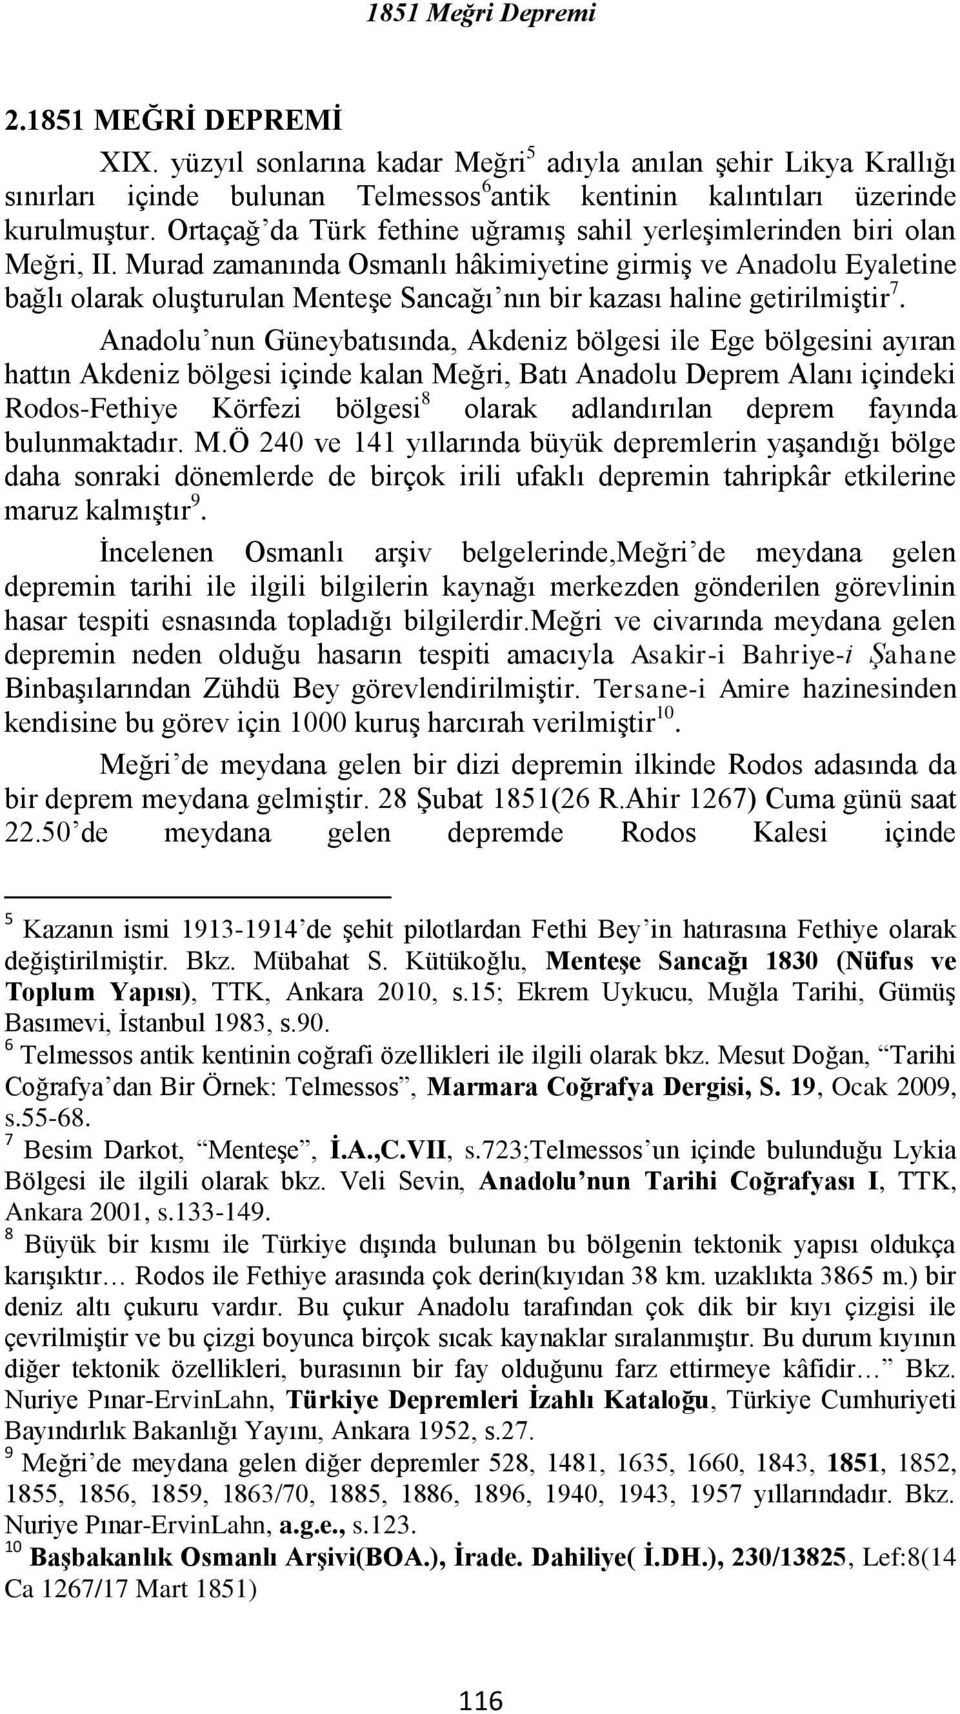 Murad zamanında Osmanlı hâkimiyetine girmiş ve Anadolu Eyaletine bağlı olarak oluşturulan Menteşe Sancağı nın bir kazası haline getirilmiştir 7.